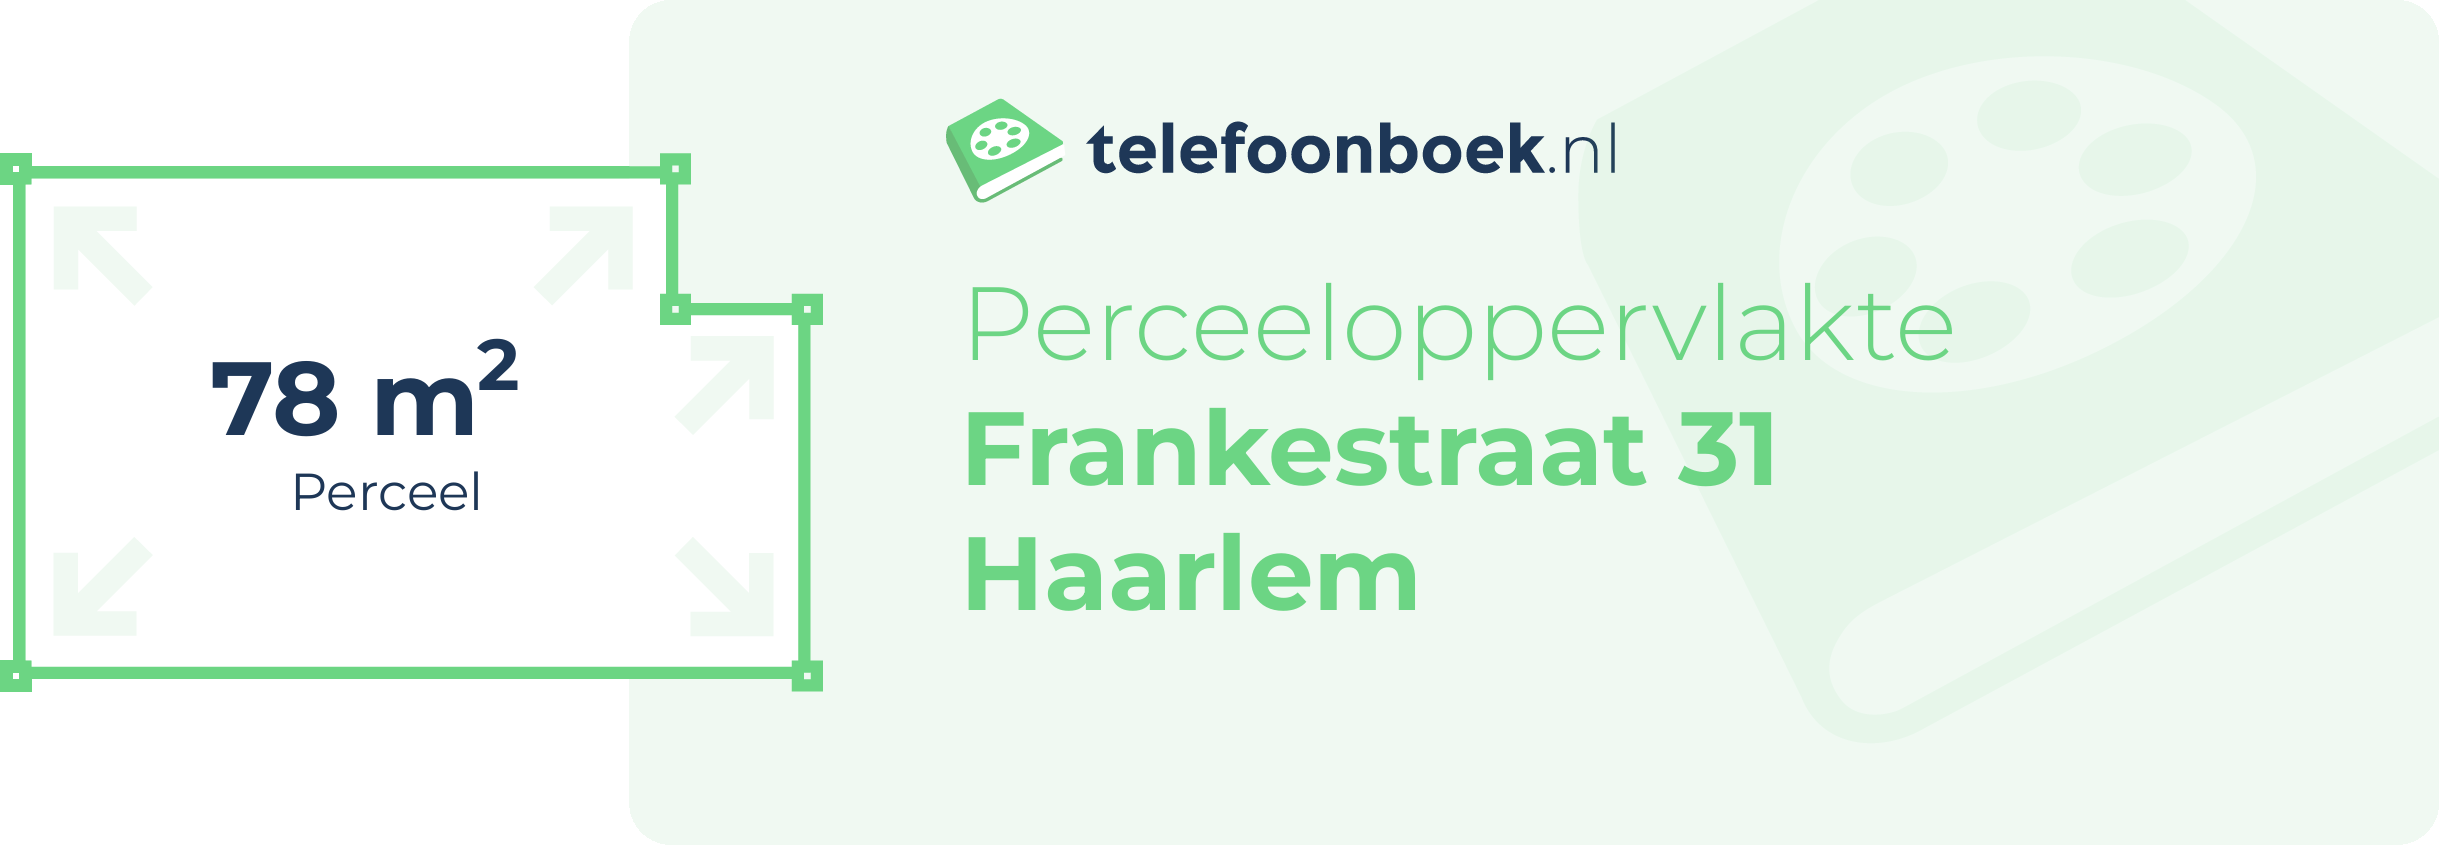 Perceeloppervlakte Frankestraat 31 Haarlem